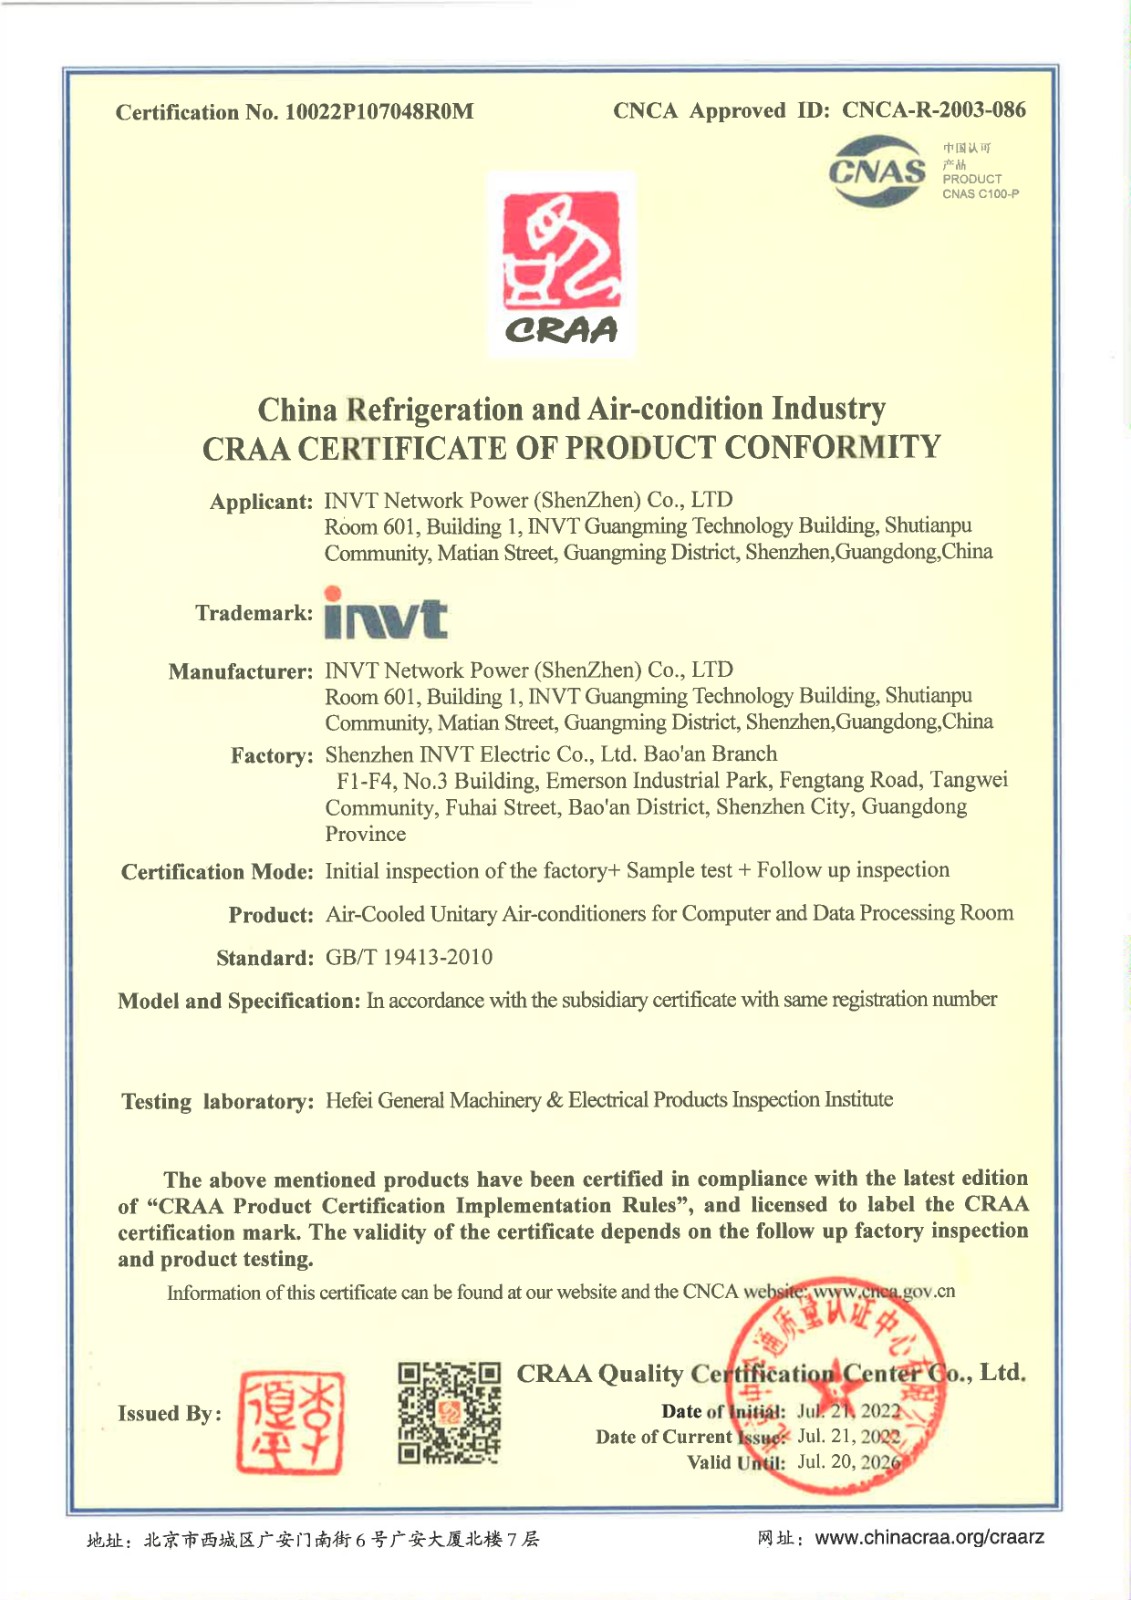 空调CRAA英文证书【有效期至2026年7月20日】_page-0001.jpg